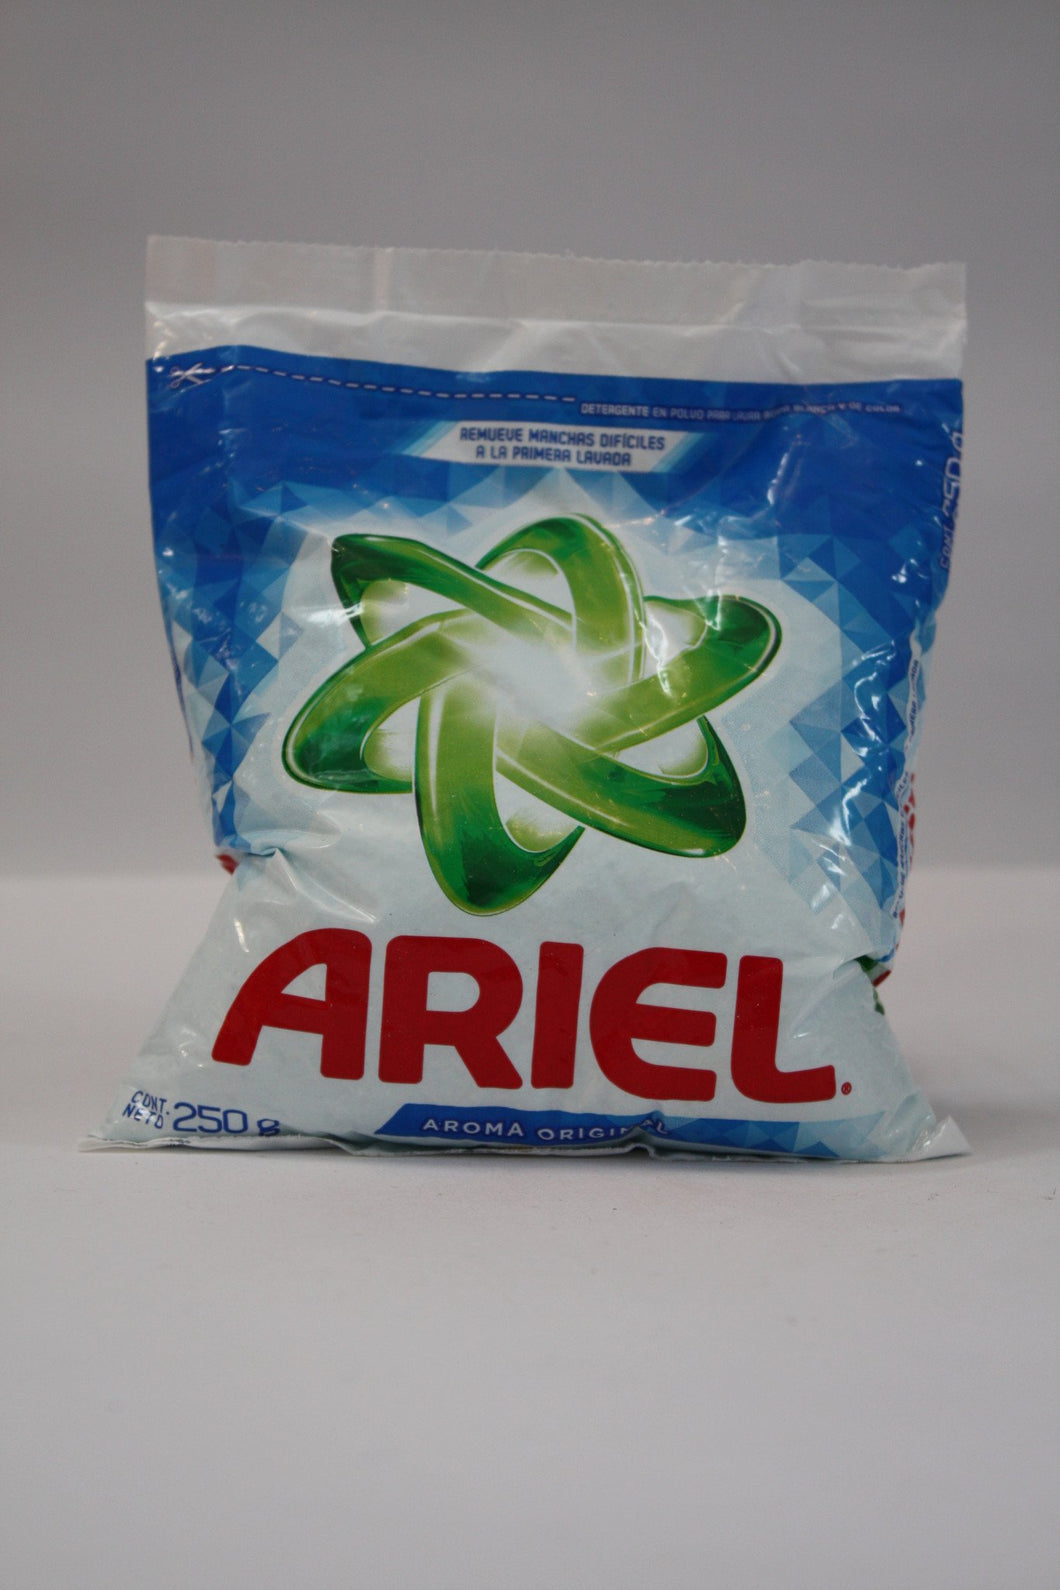 Media Caja Detergente Ariel de 250 grs con 18 bolsas - Procter & Gamble-Detergentes-Procter & Gamble-7501065908841-MayoreoTotal